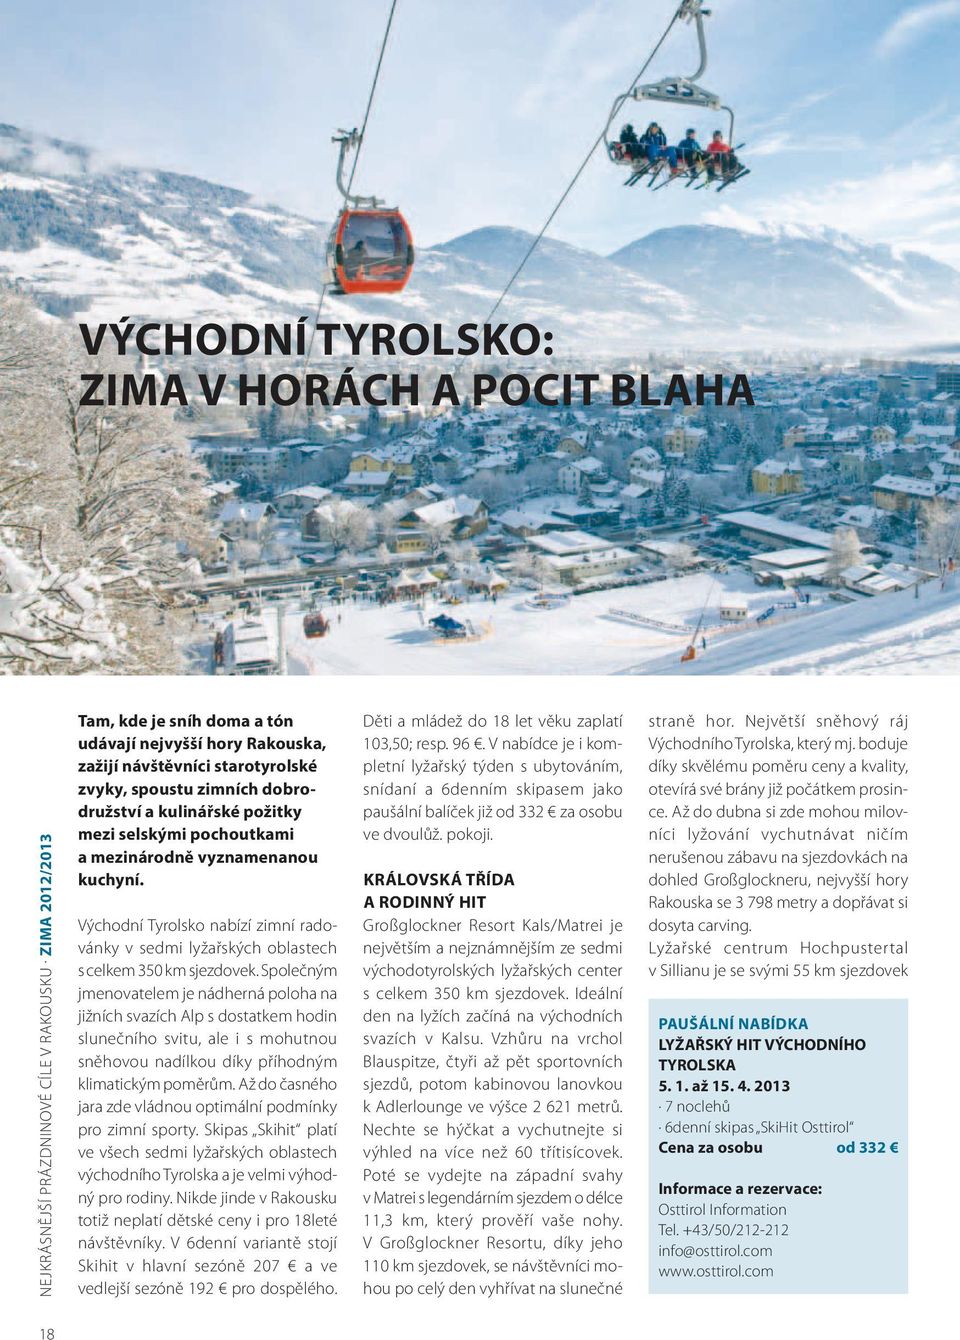 Východní Tyrolsko nabízí zimní radovánky v sedmi lyžařských oblastech s celkem 350 km sjezdovek.